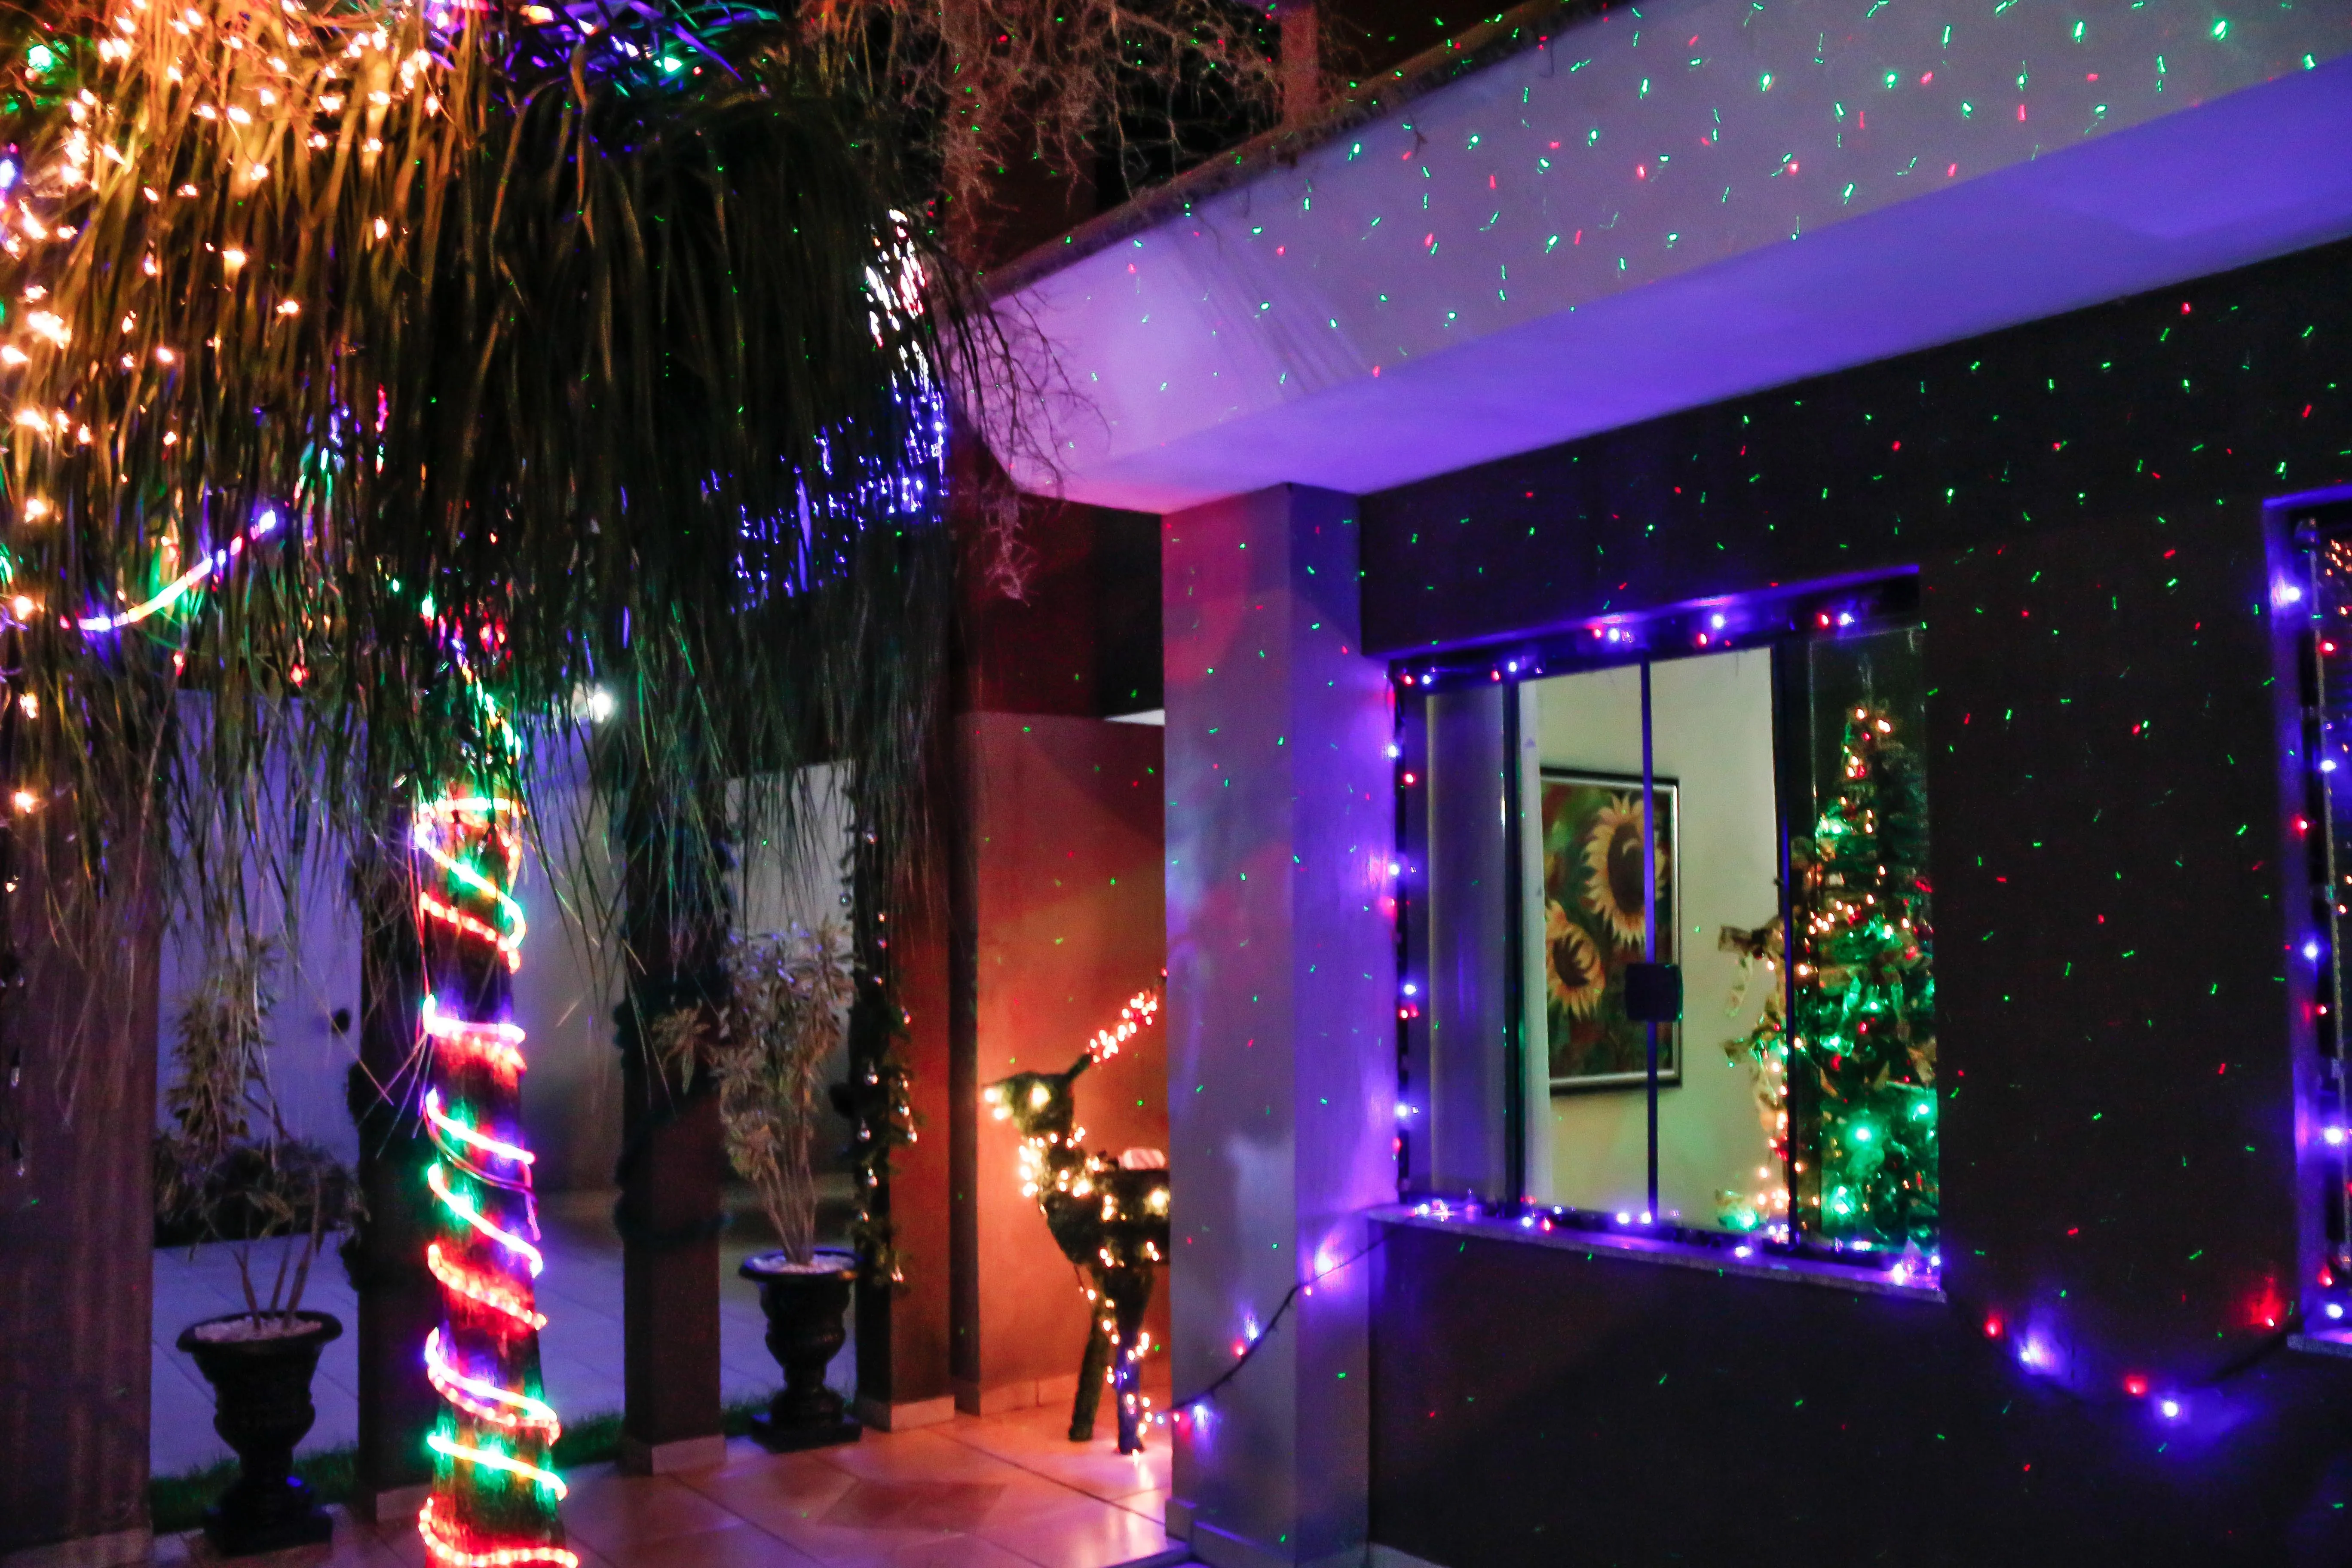 Prefeitura de Apucarana lança concurso de decoração natalina